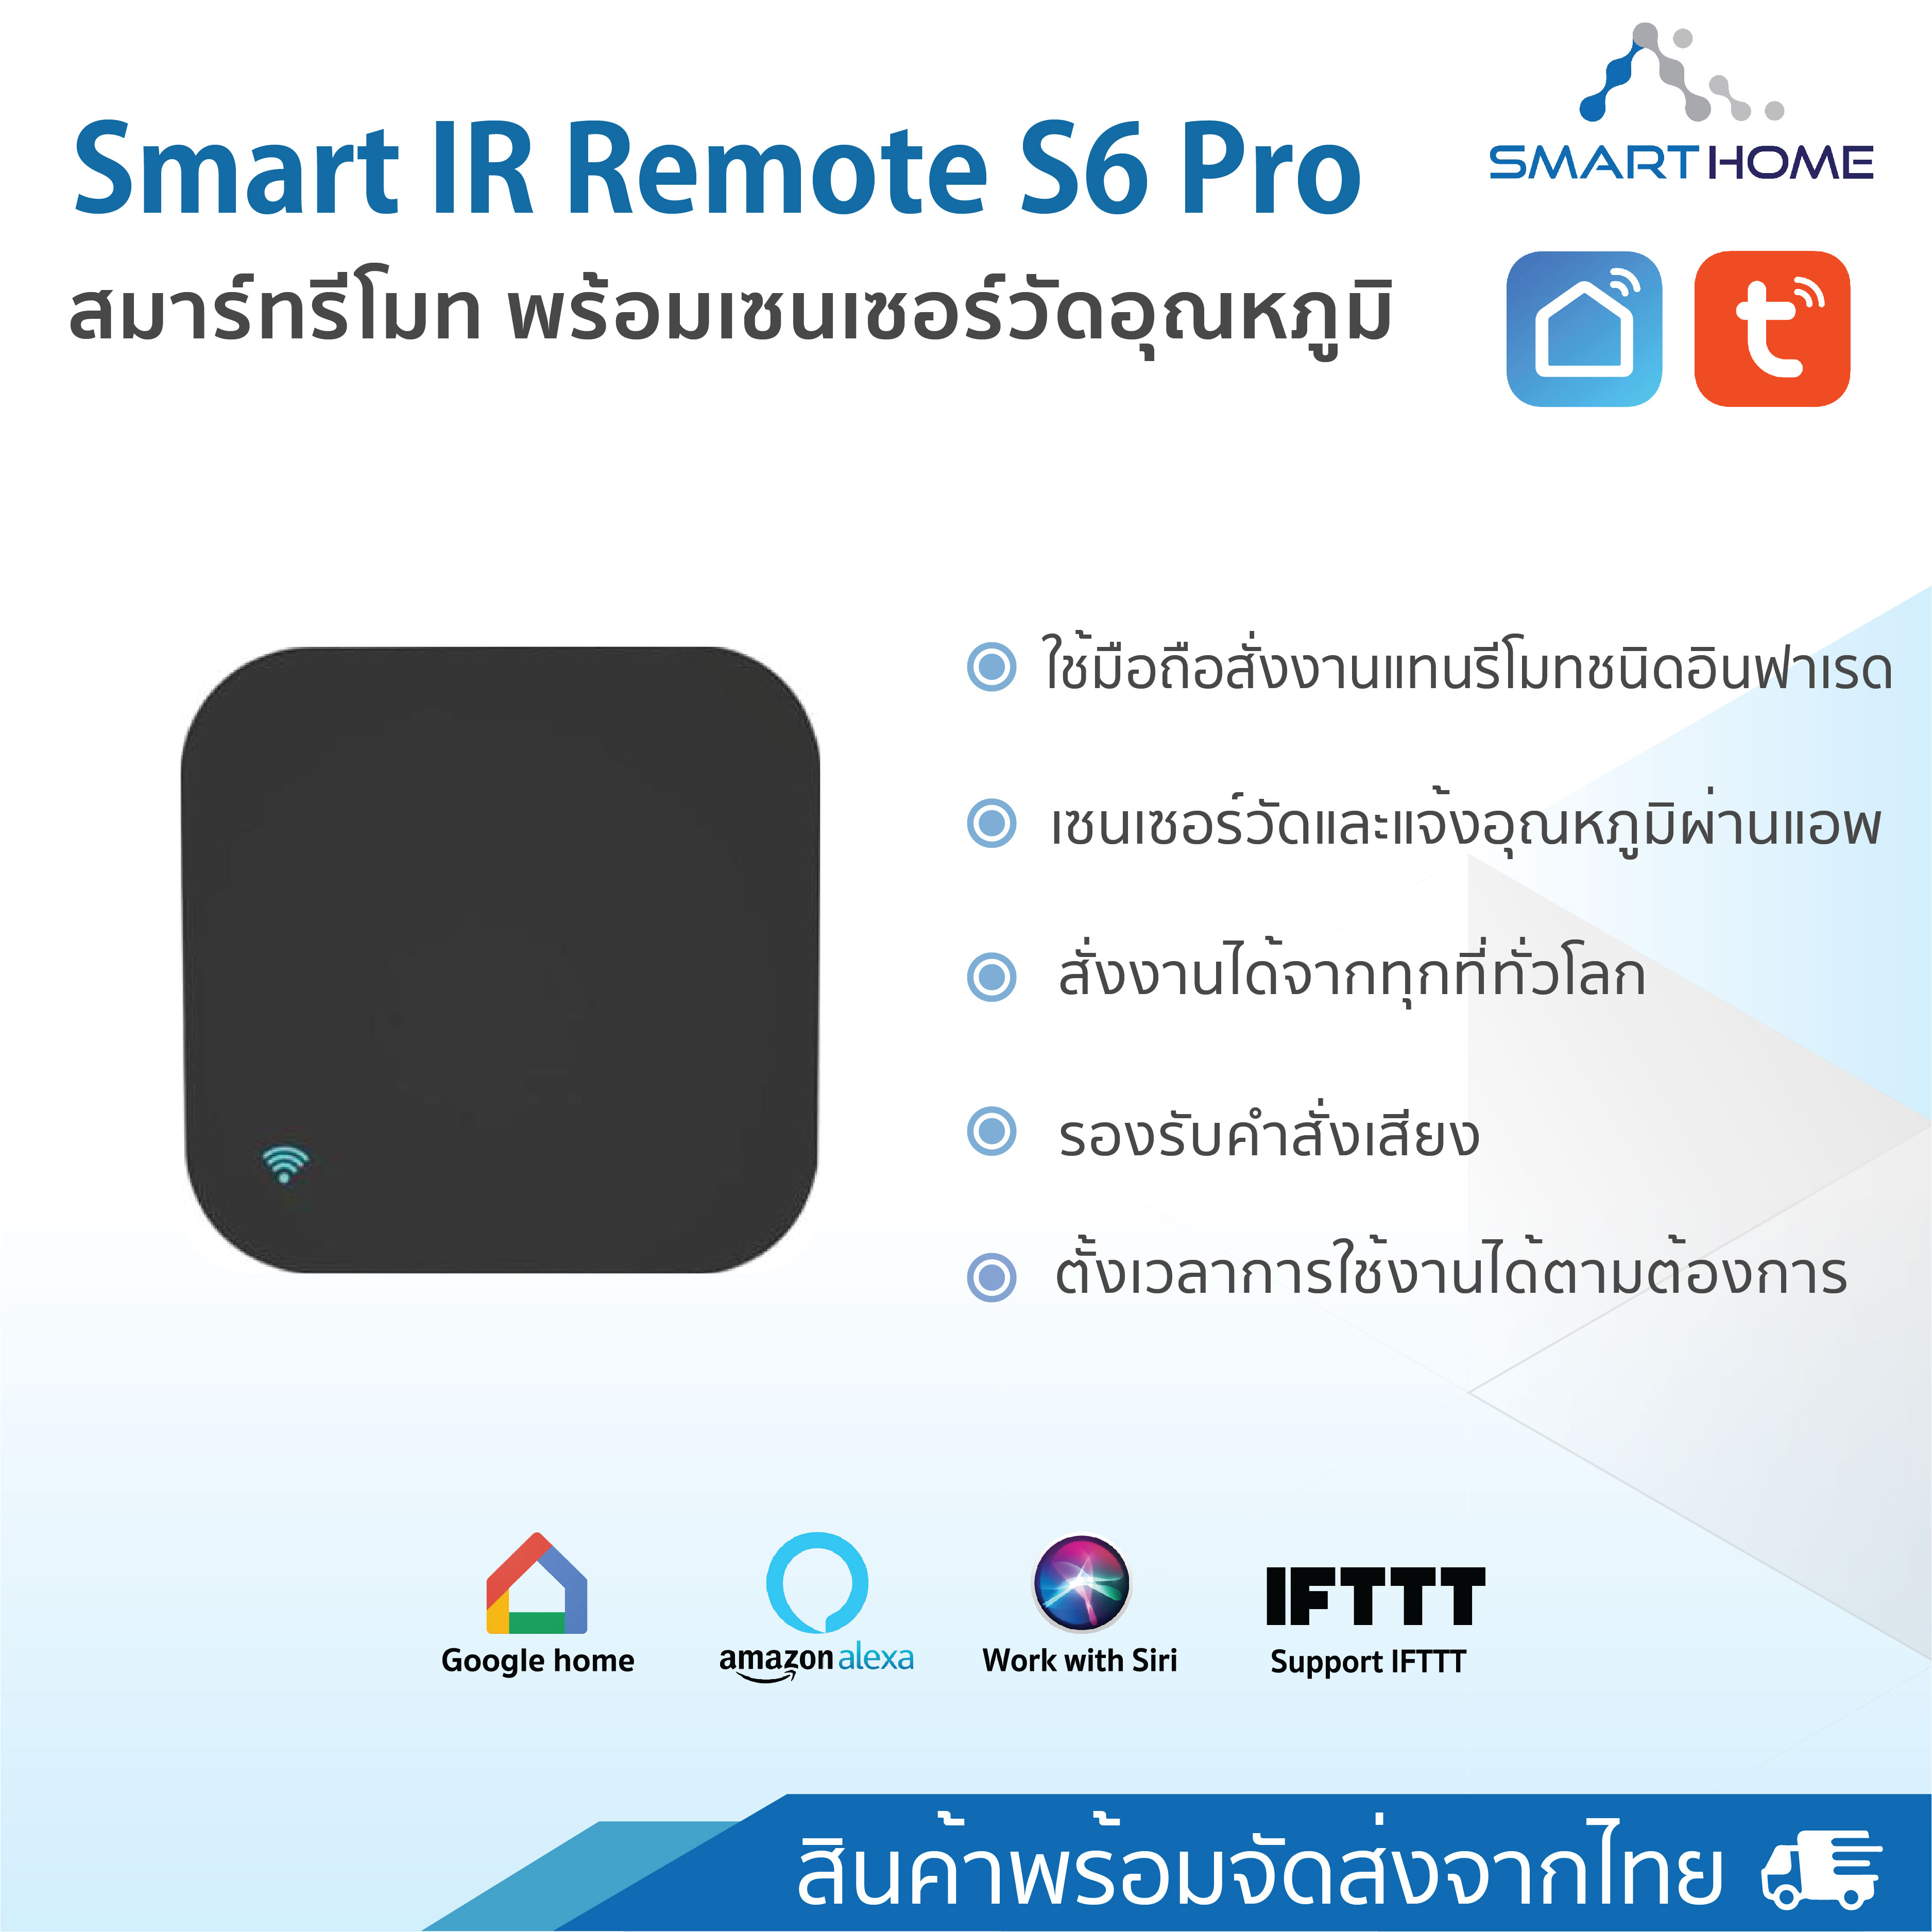 Smart IR Remote S6 Pro สมาร์ทรีโมทแอร์ ทีวี เครื่องใช้ไฟฟ้าพร้อมเซ็นเซอร์วัดอุณหภูมิในตัว